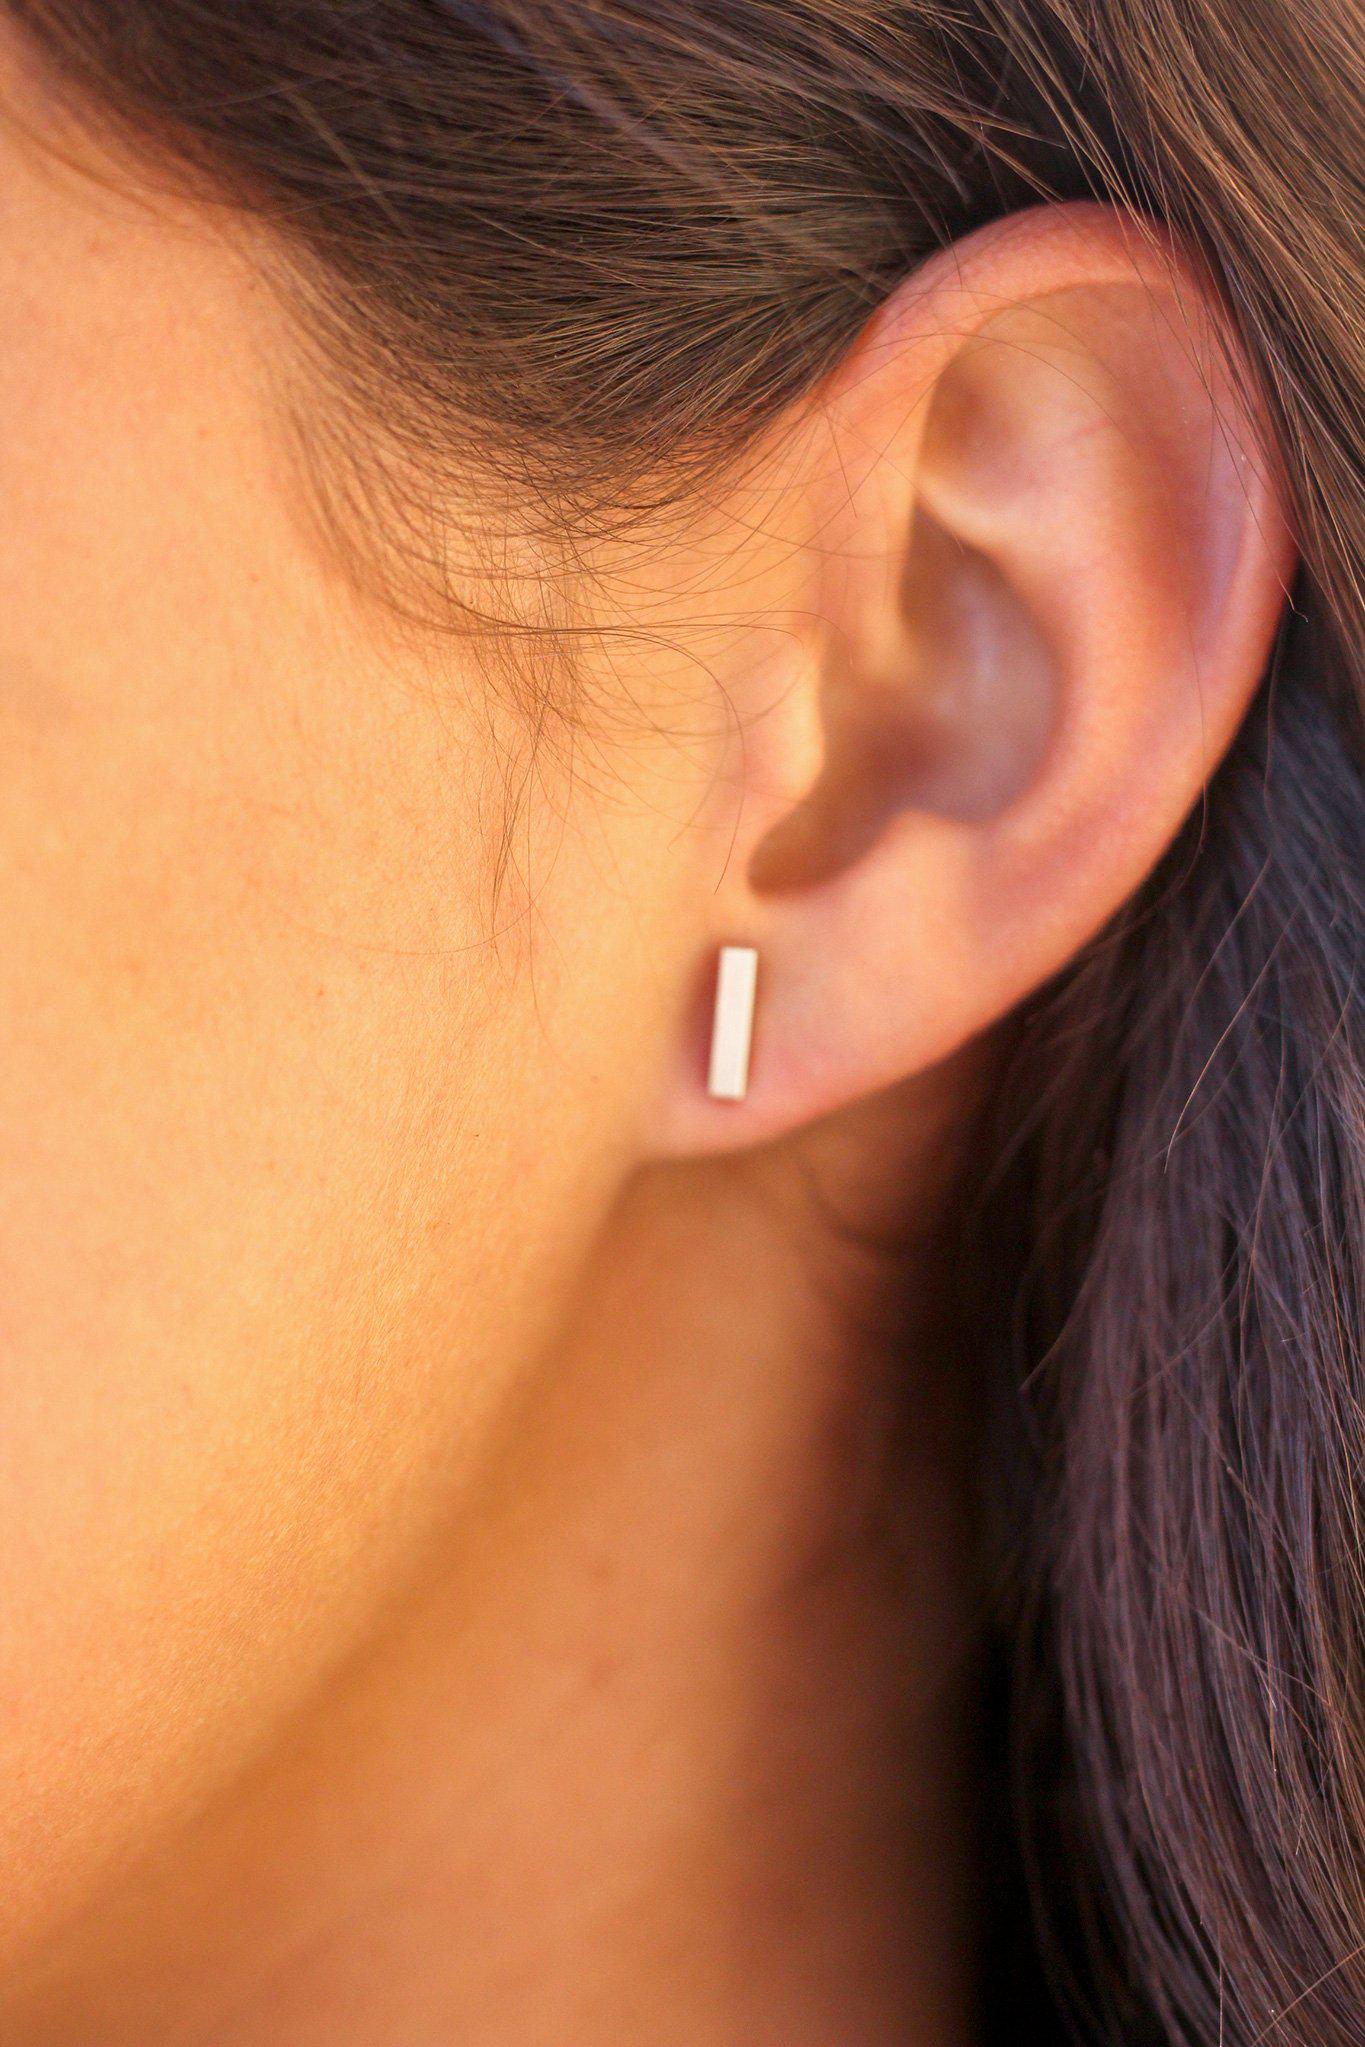 Silver Bar Stud Earrings